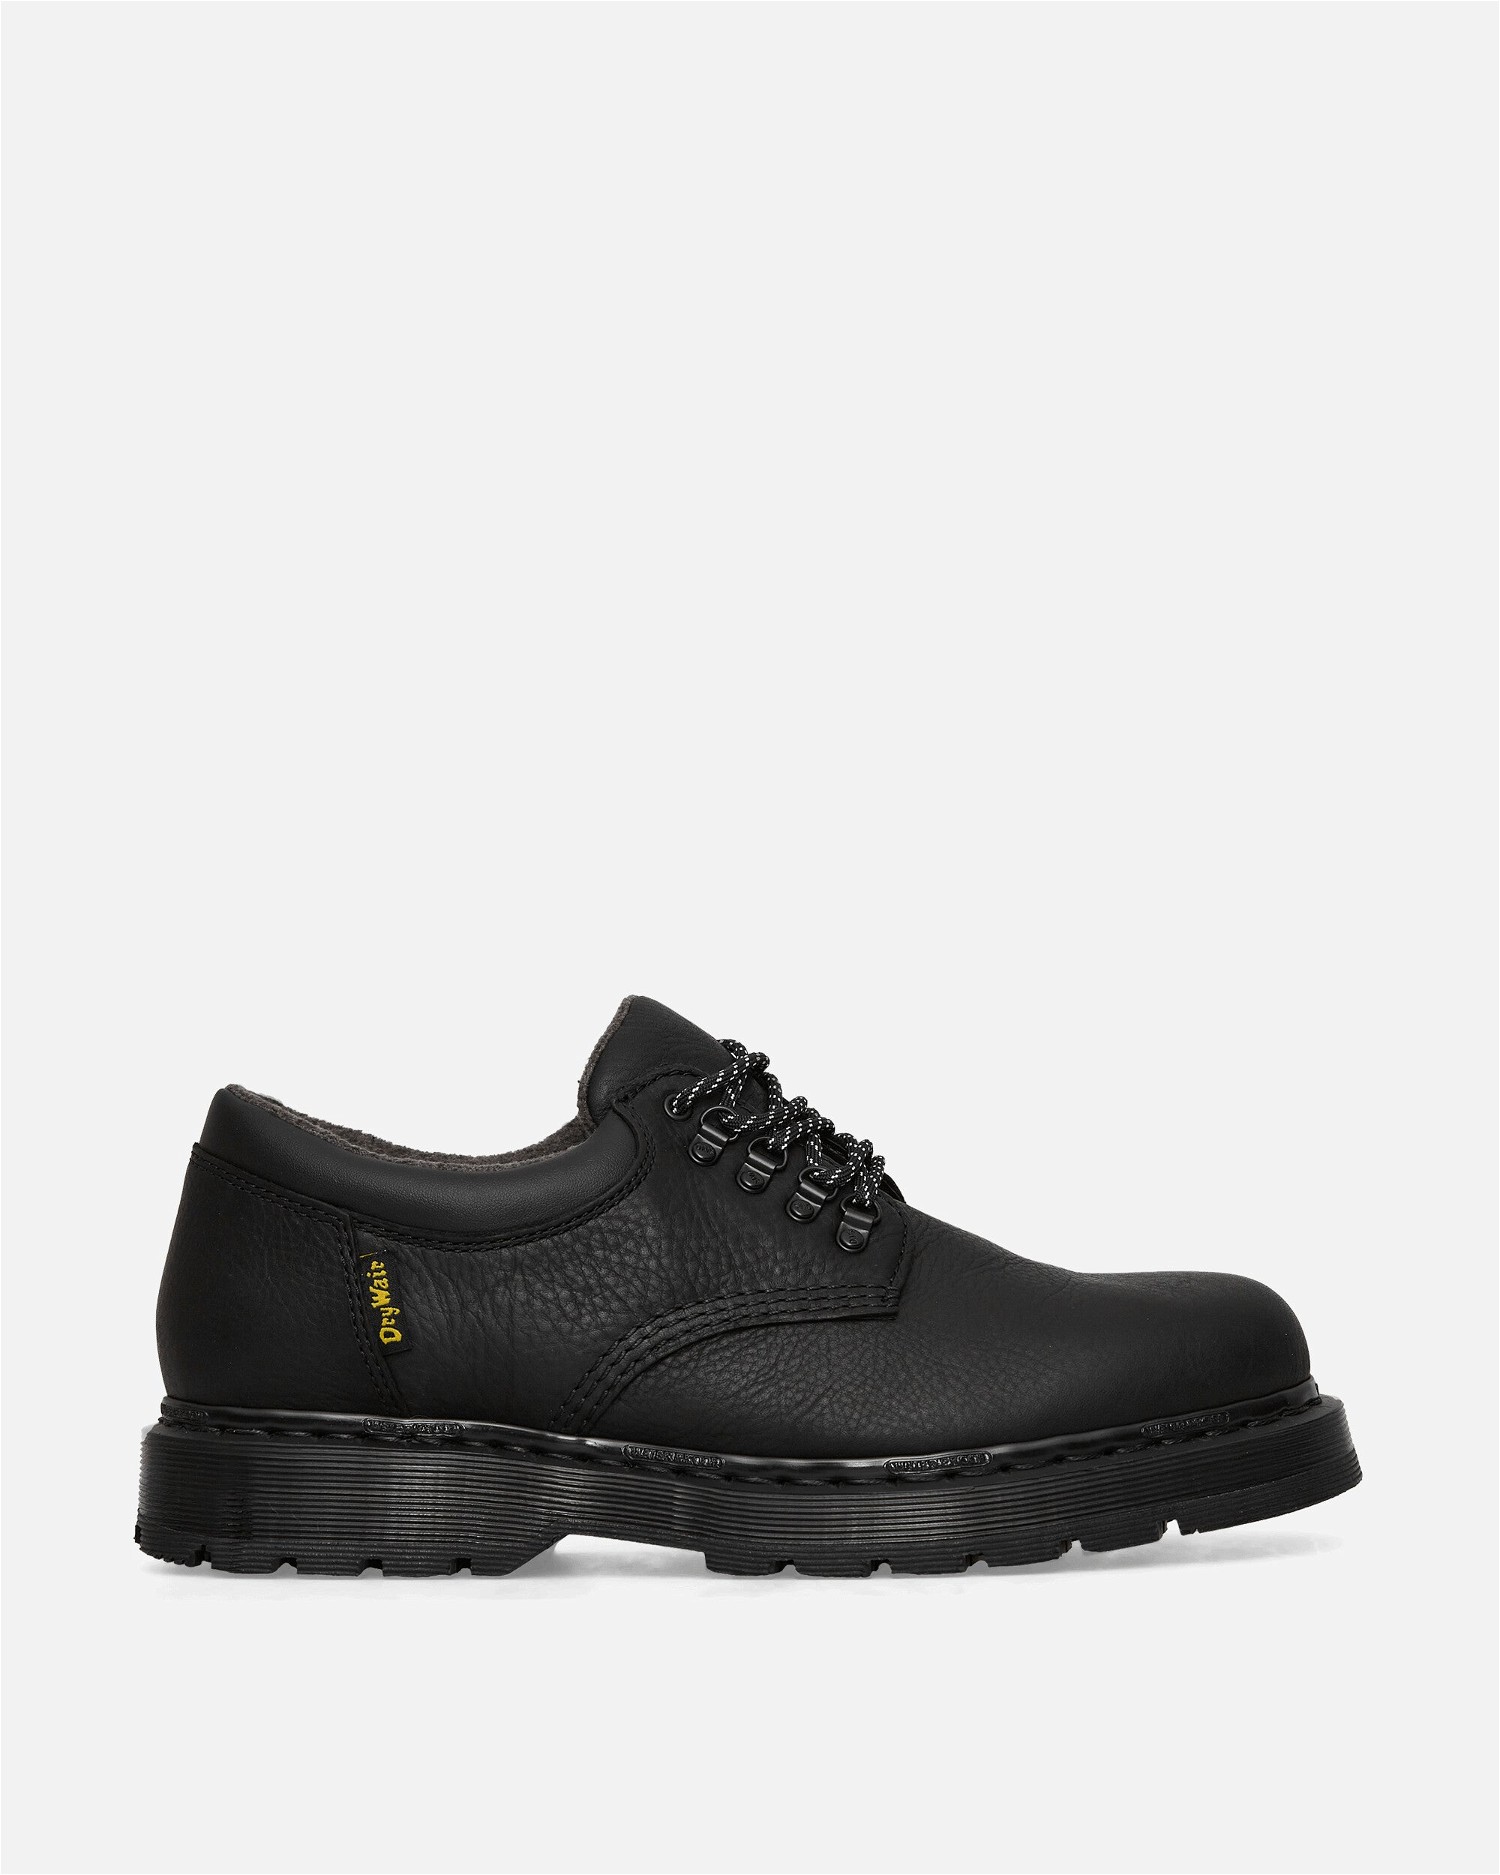 Sneakerek és cipők Dr. Martens 8053 Tailgate WP Shoes Fekete | 31195001 001, 1